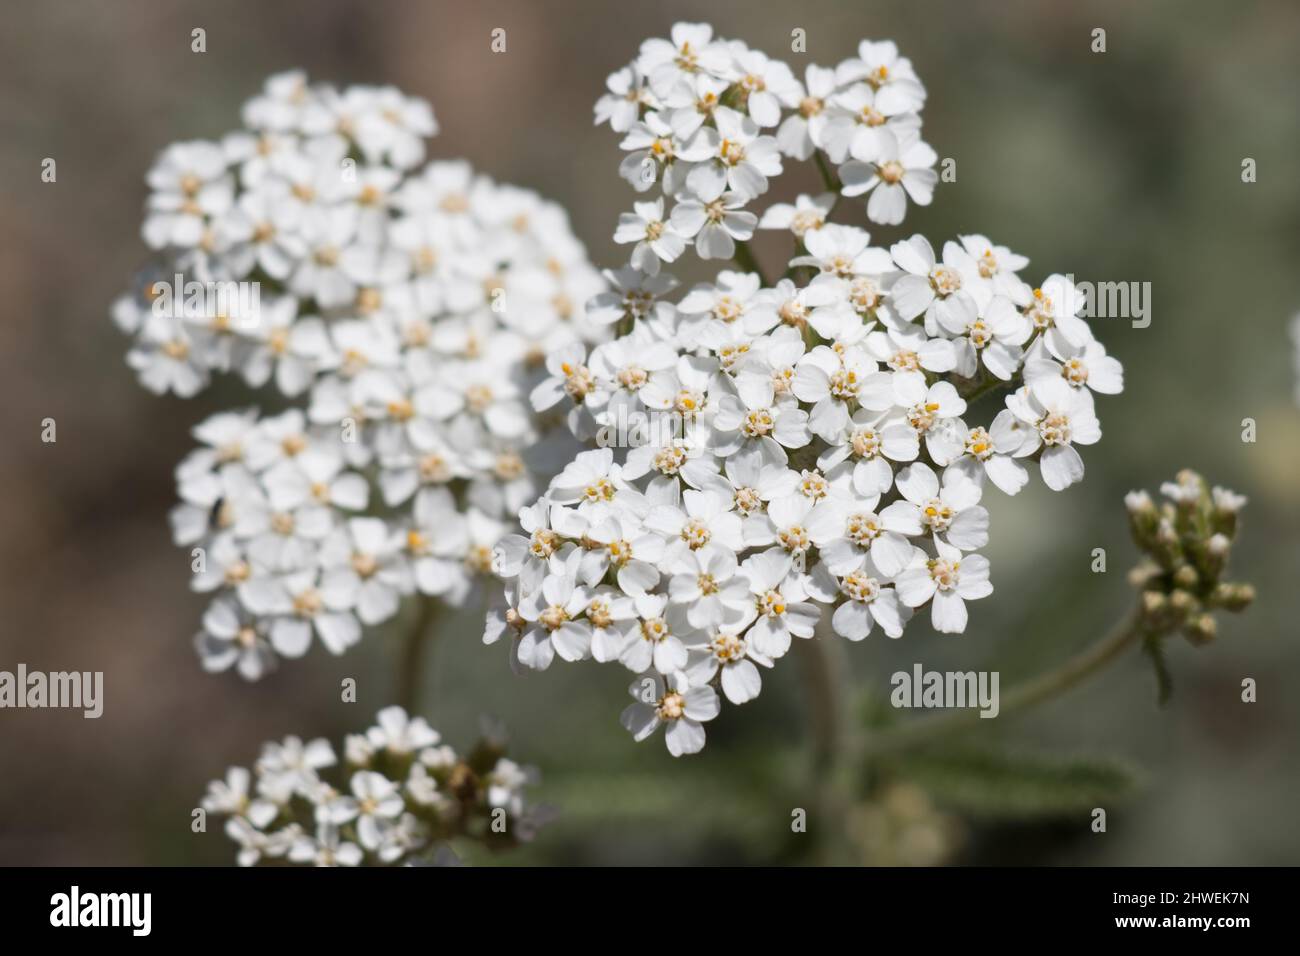 Le racémose à fleurs blanches irradie l'inflorescence de la tête d'Achillea Millefolium, Asteraceae, vivace indigène dans les montagnes San Bernardino, été. Banque D'Images